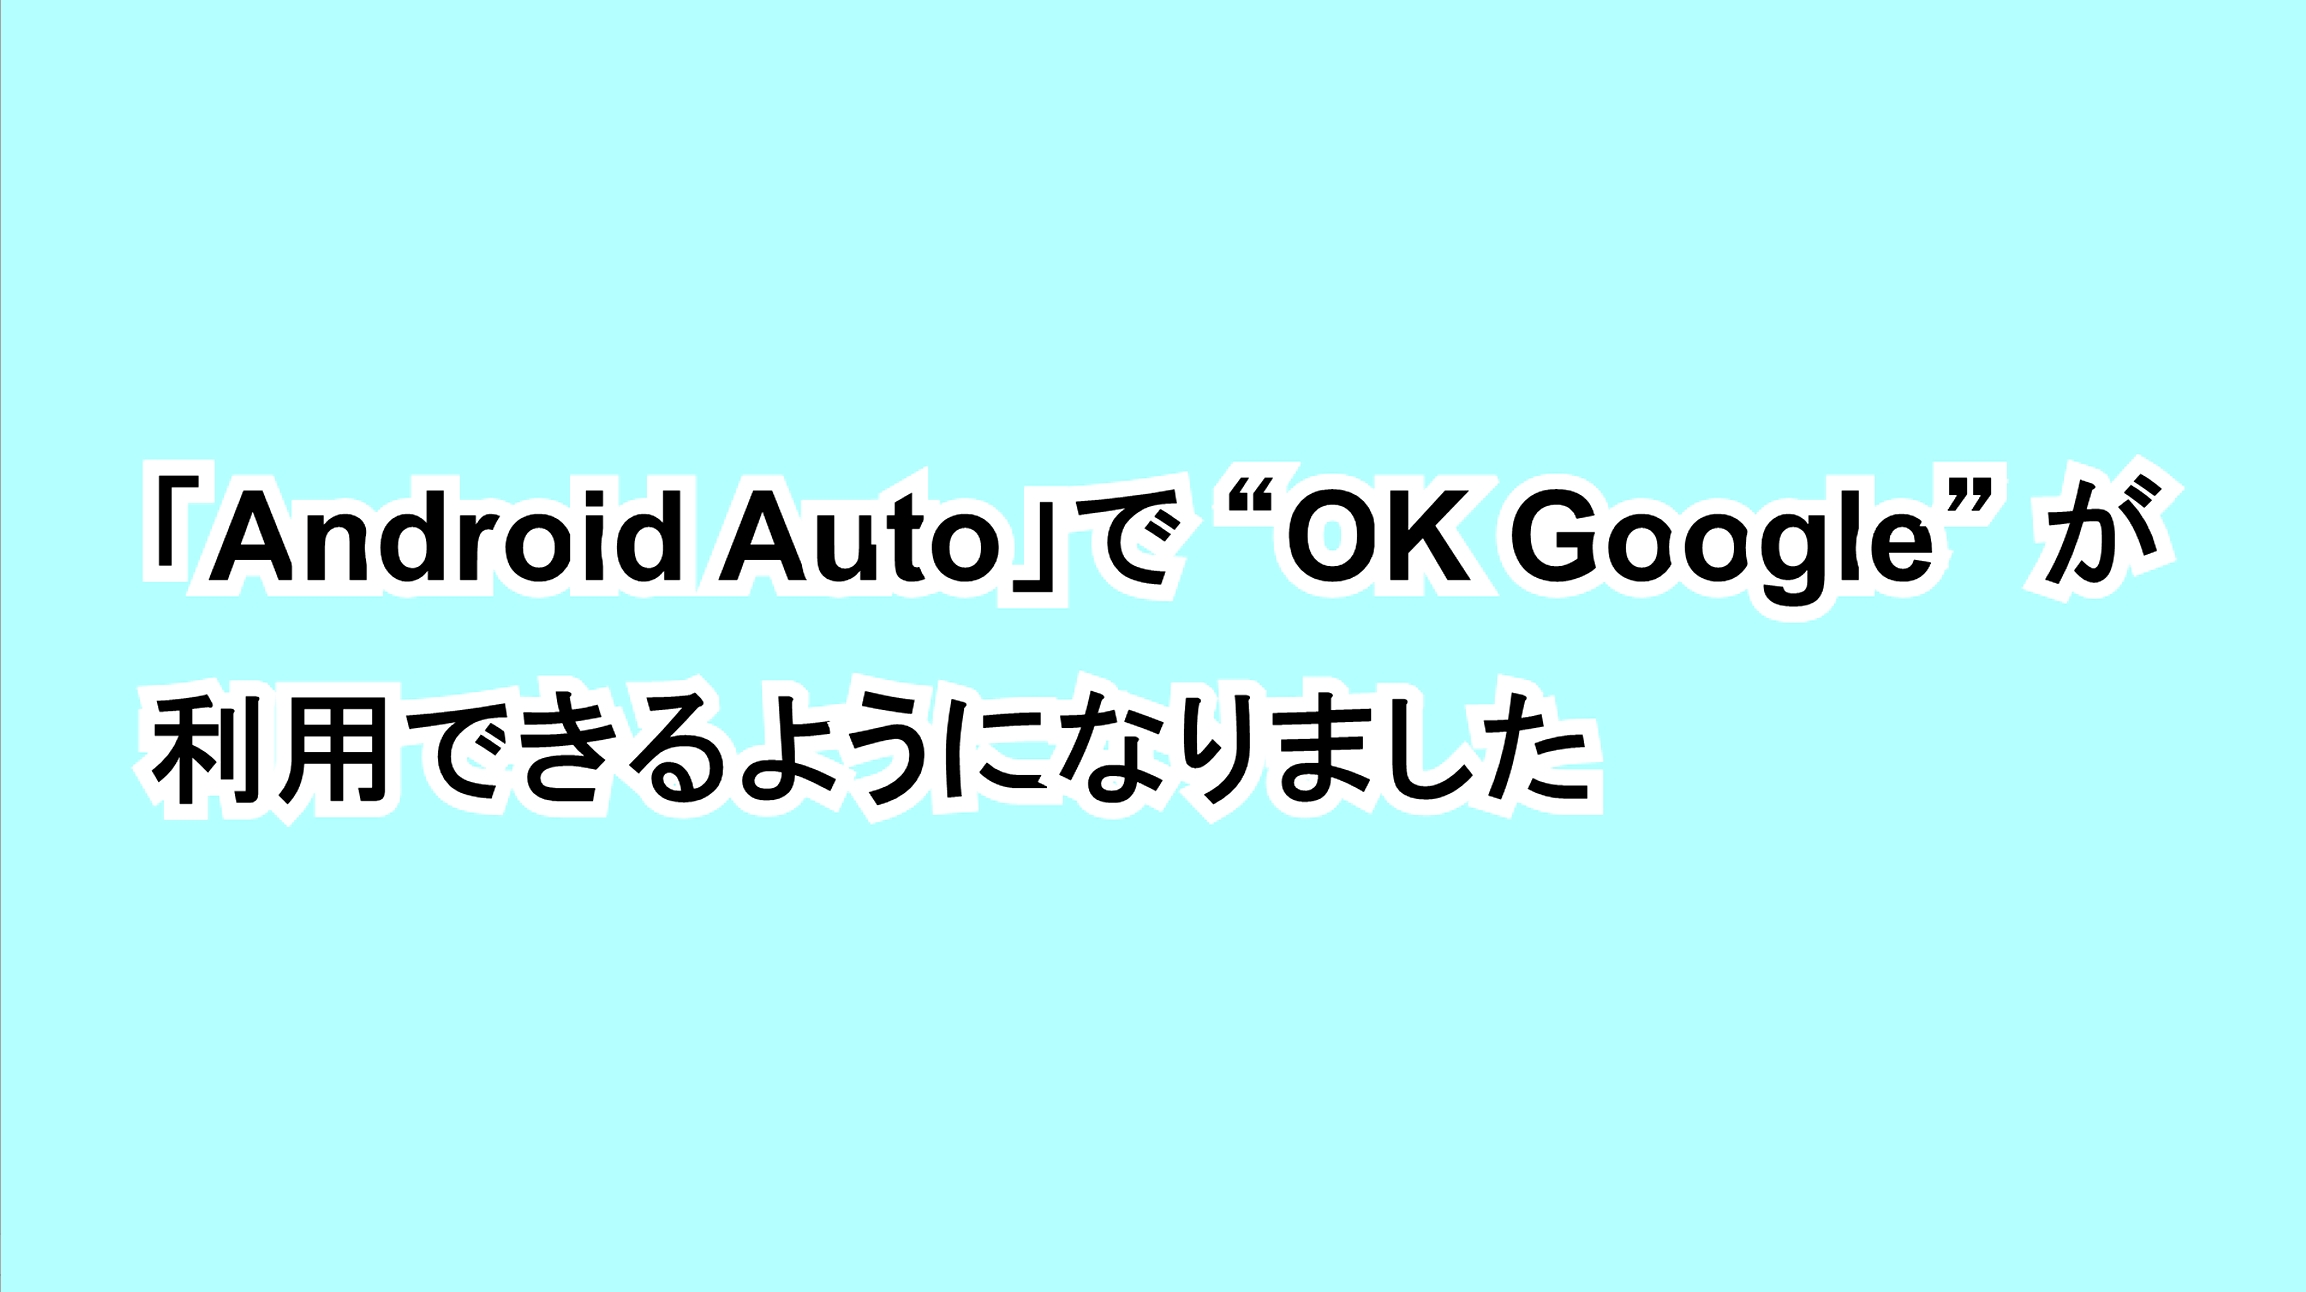 「Android Auto」で“OK Google”が利用できるようになりました